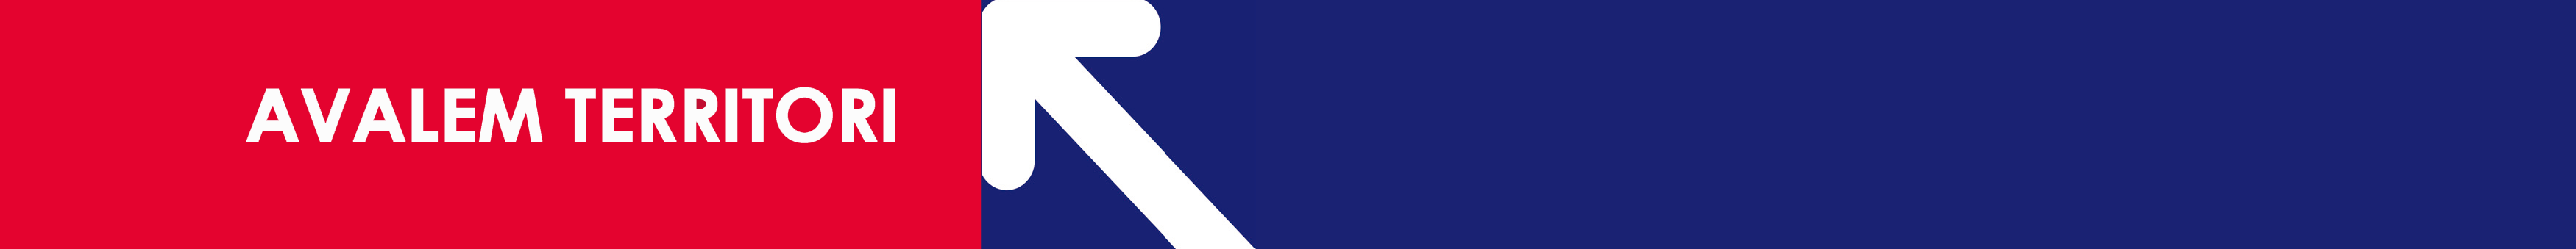 Banner Avalem Territori